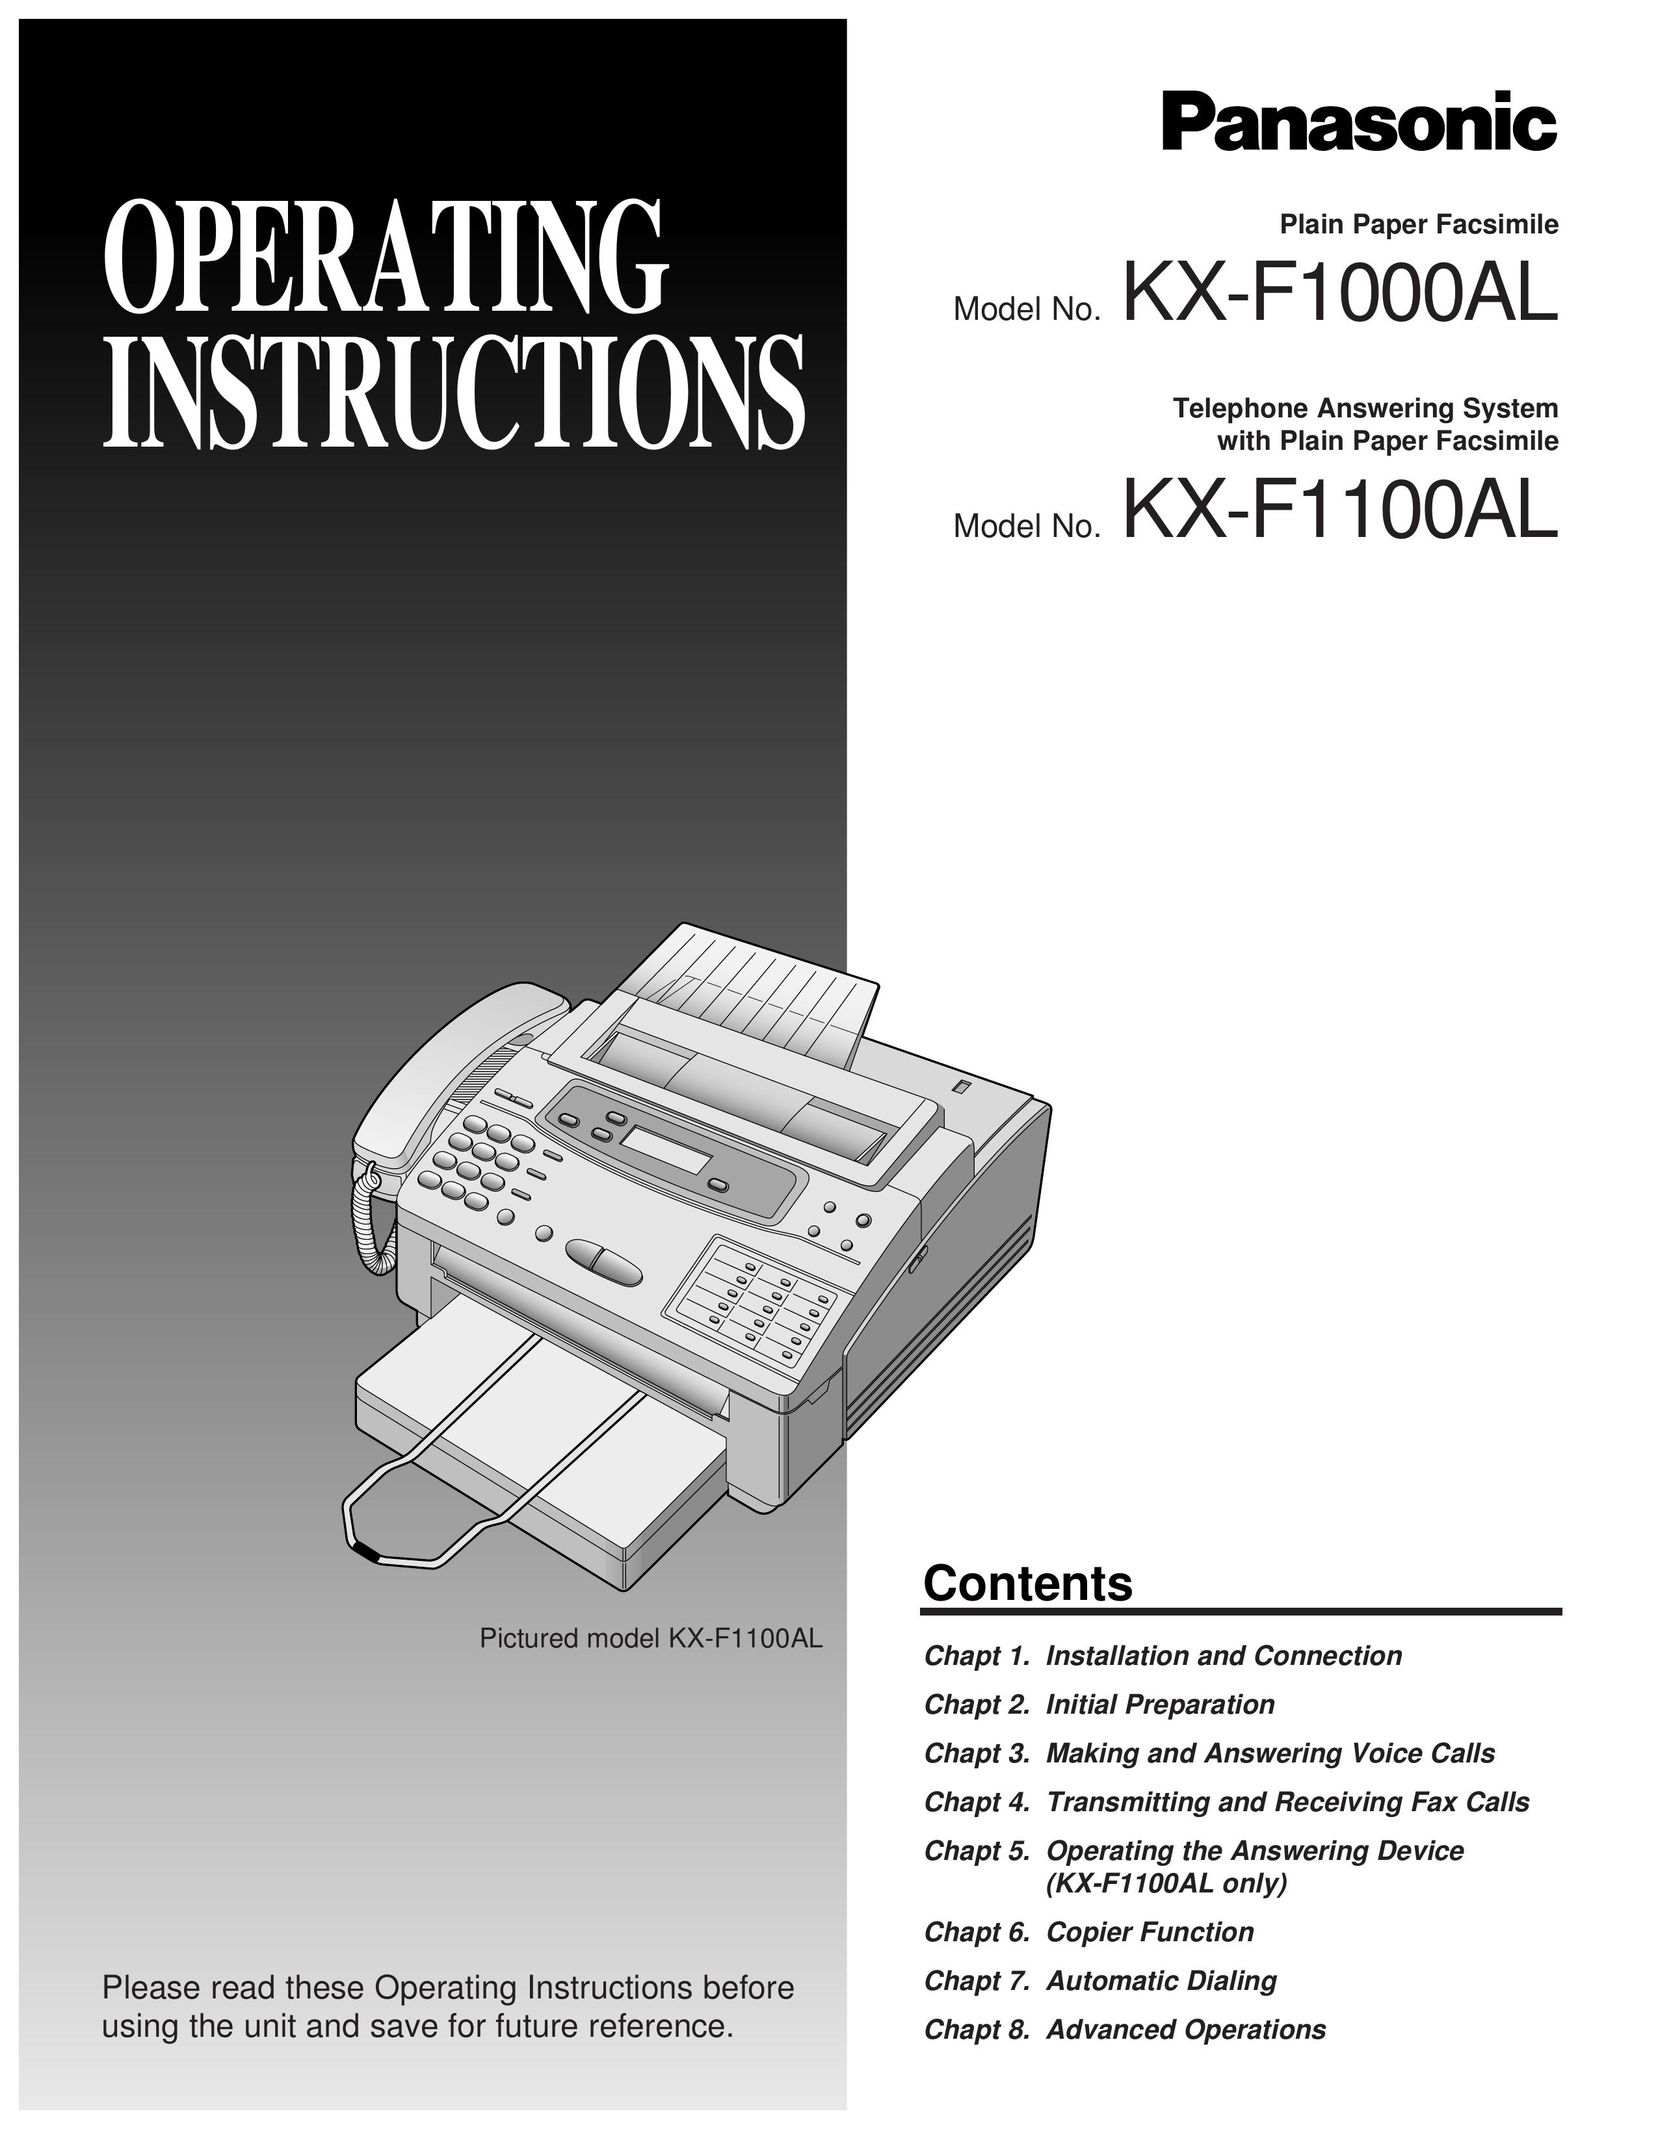 Panasonic KX-F1100AL Fax Machine User Manual